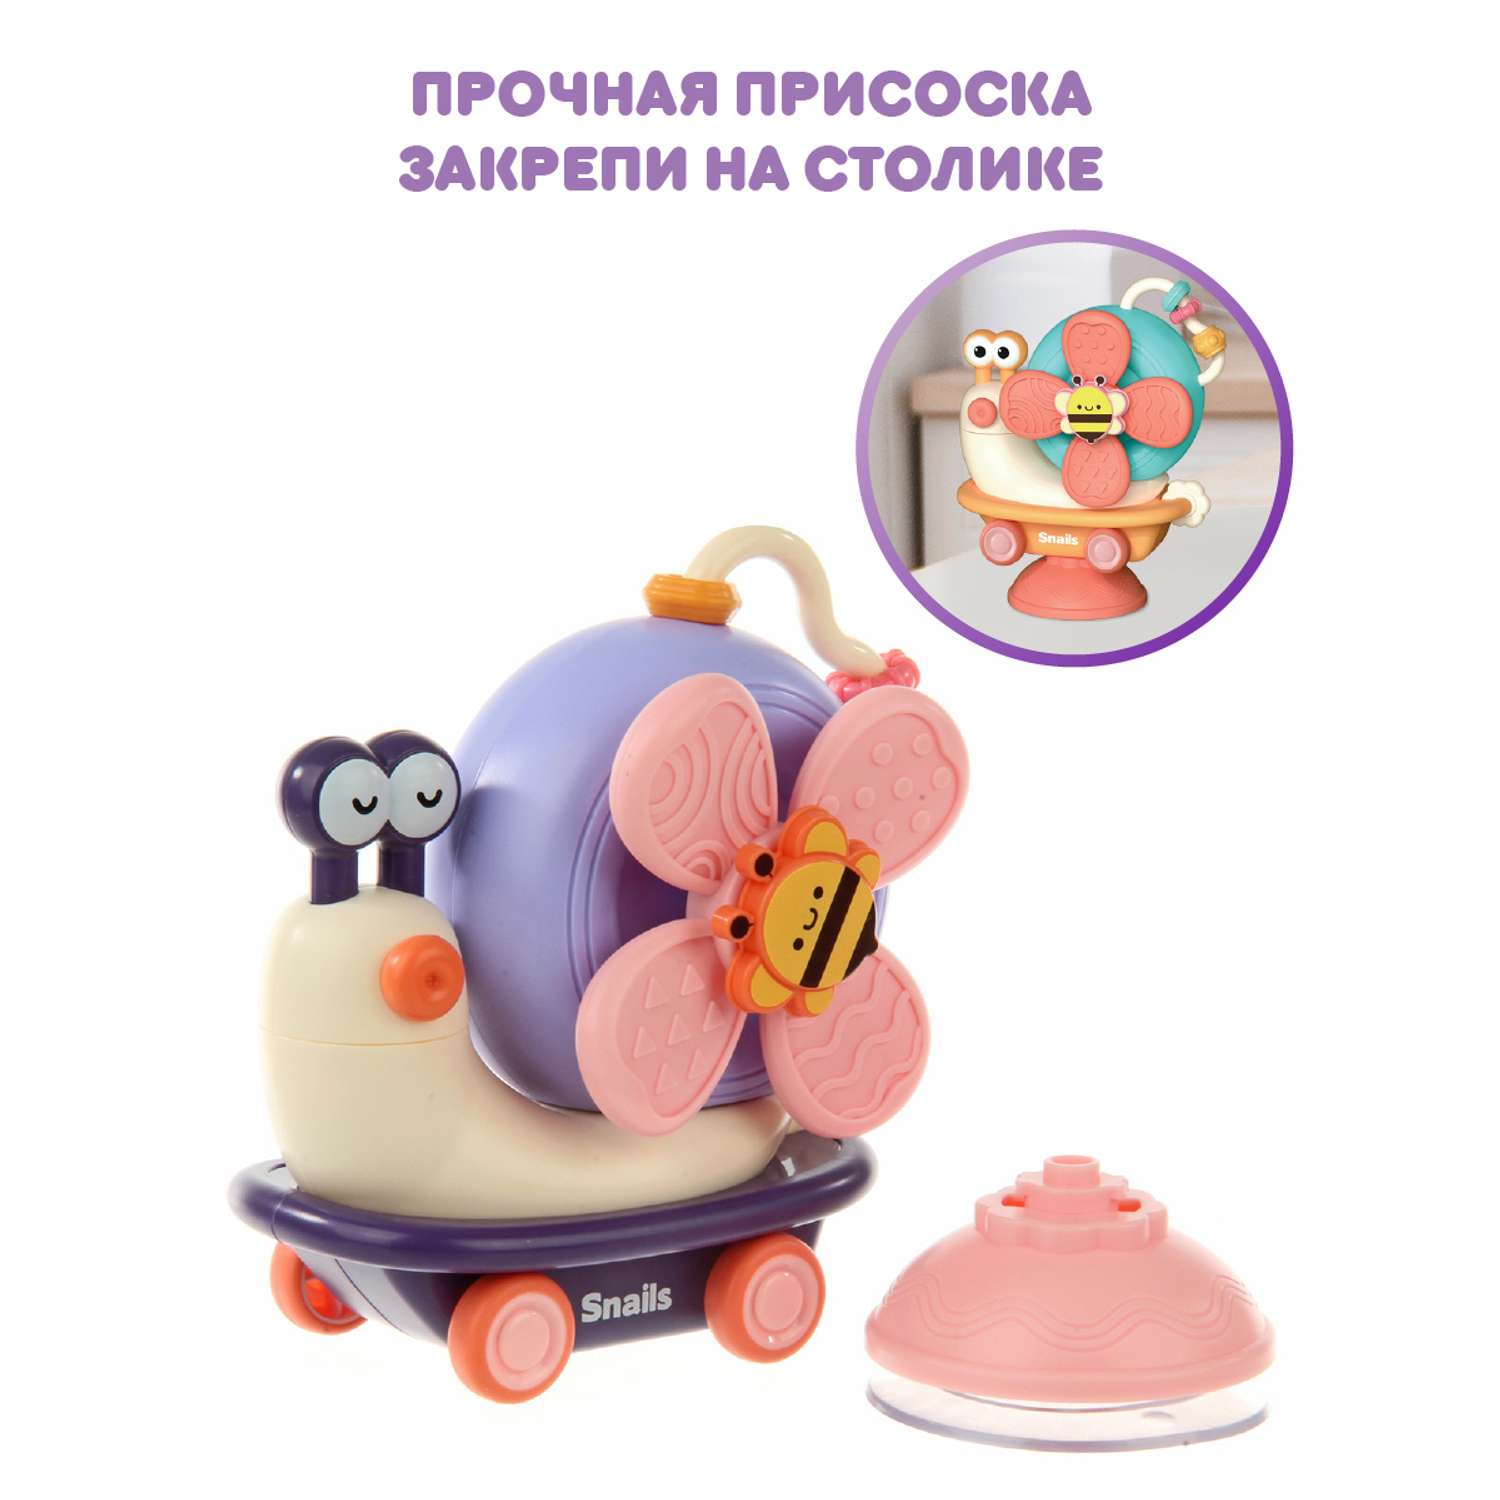 Развивающая игрушка Ути Пути 2 в 1 спиннер и покатушка на присоске Мадам Улитка - фото 3